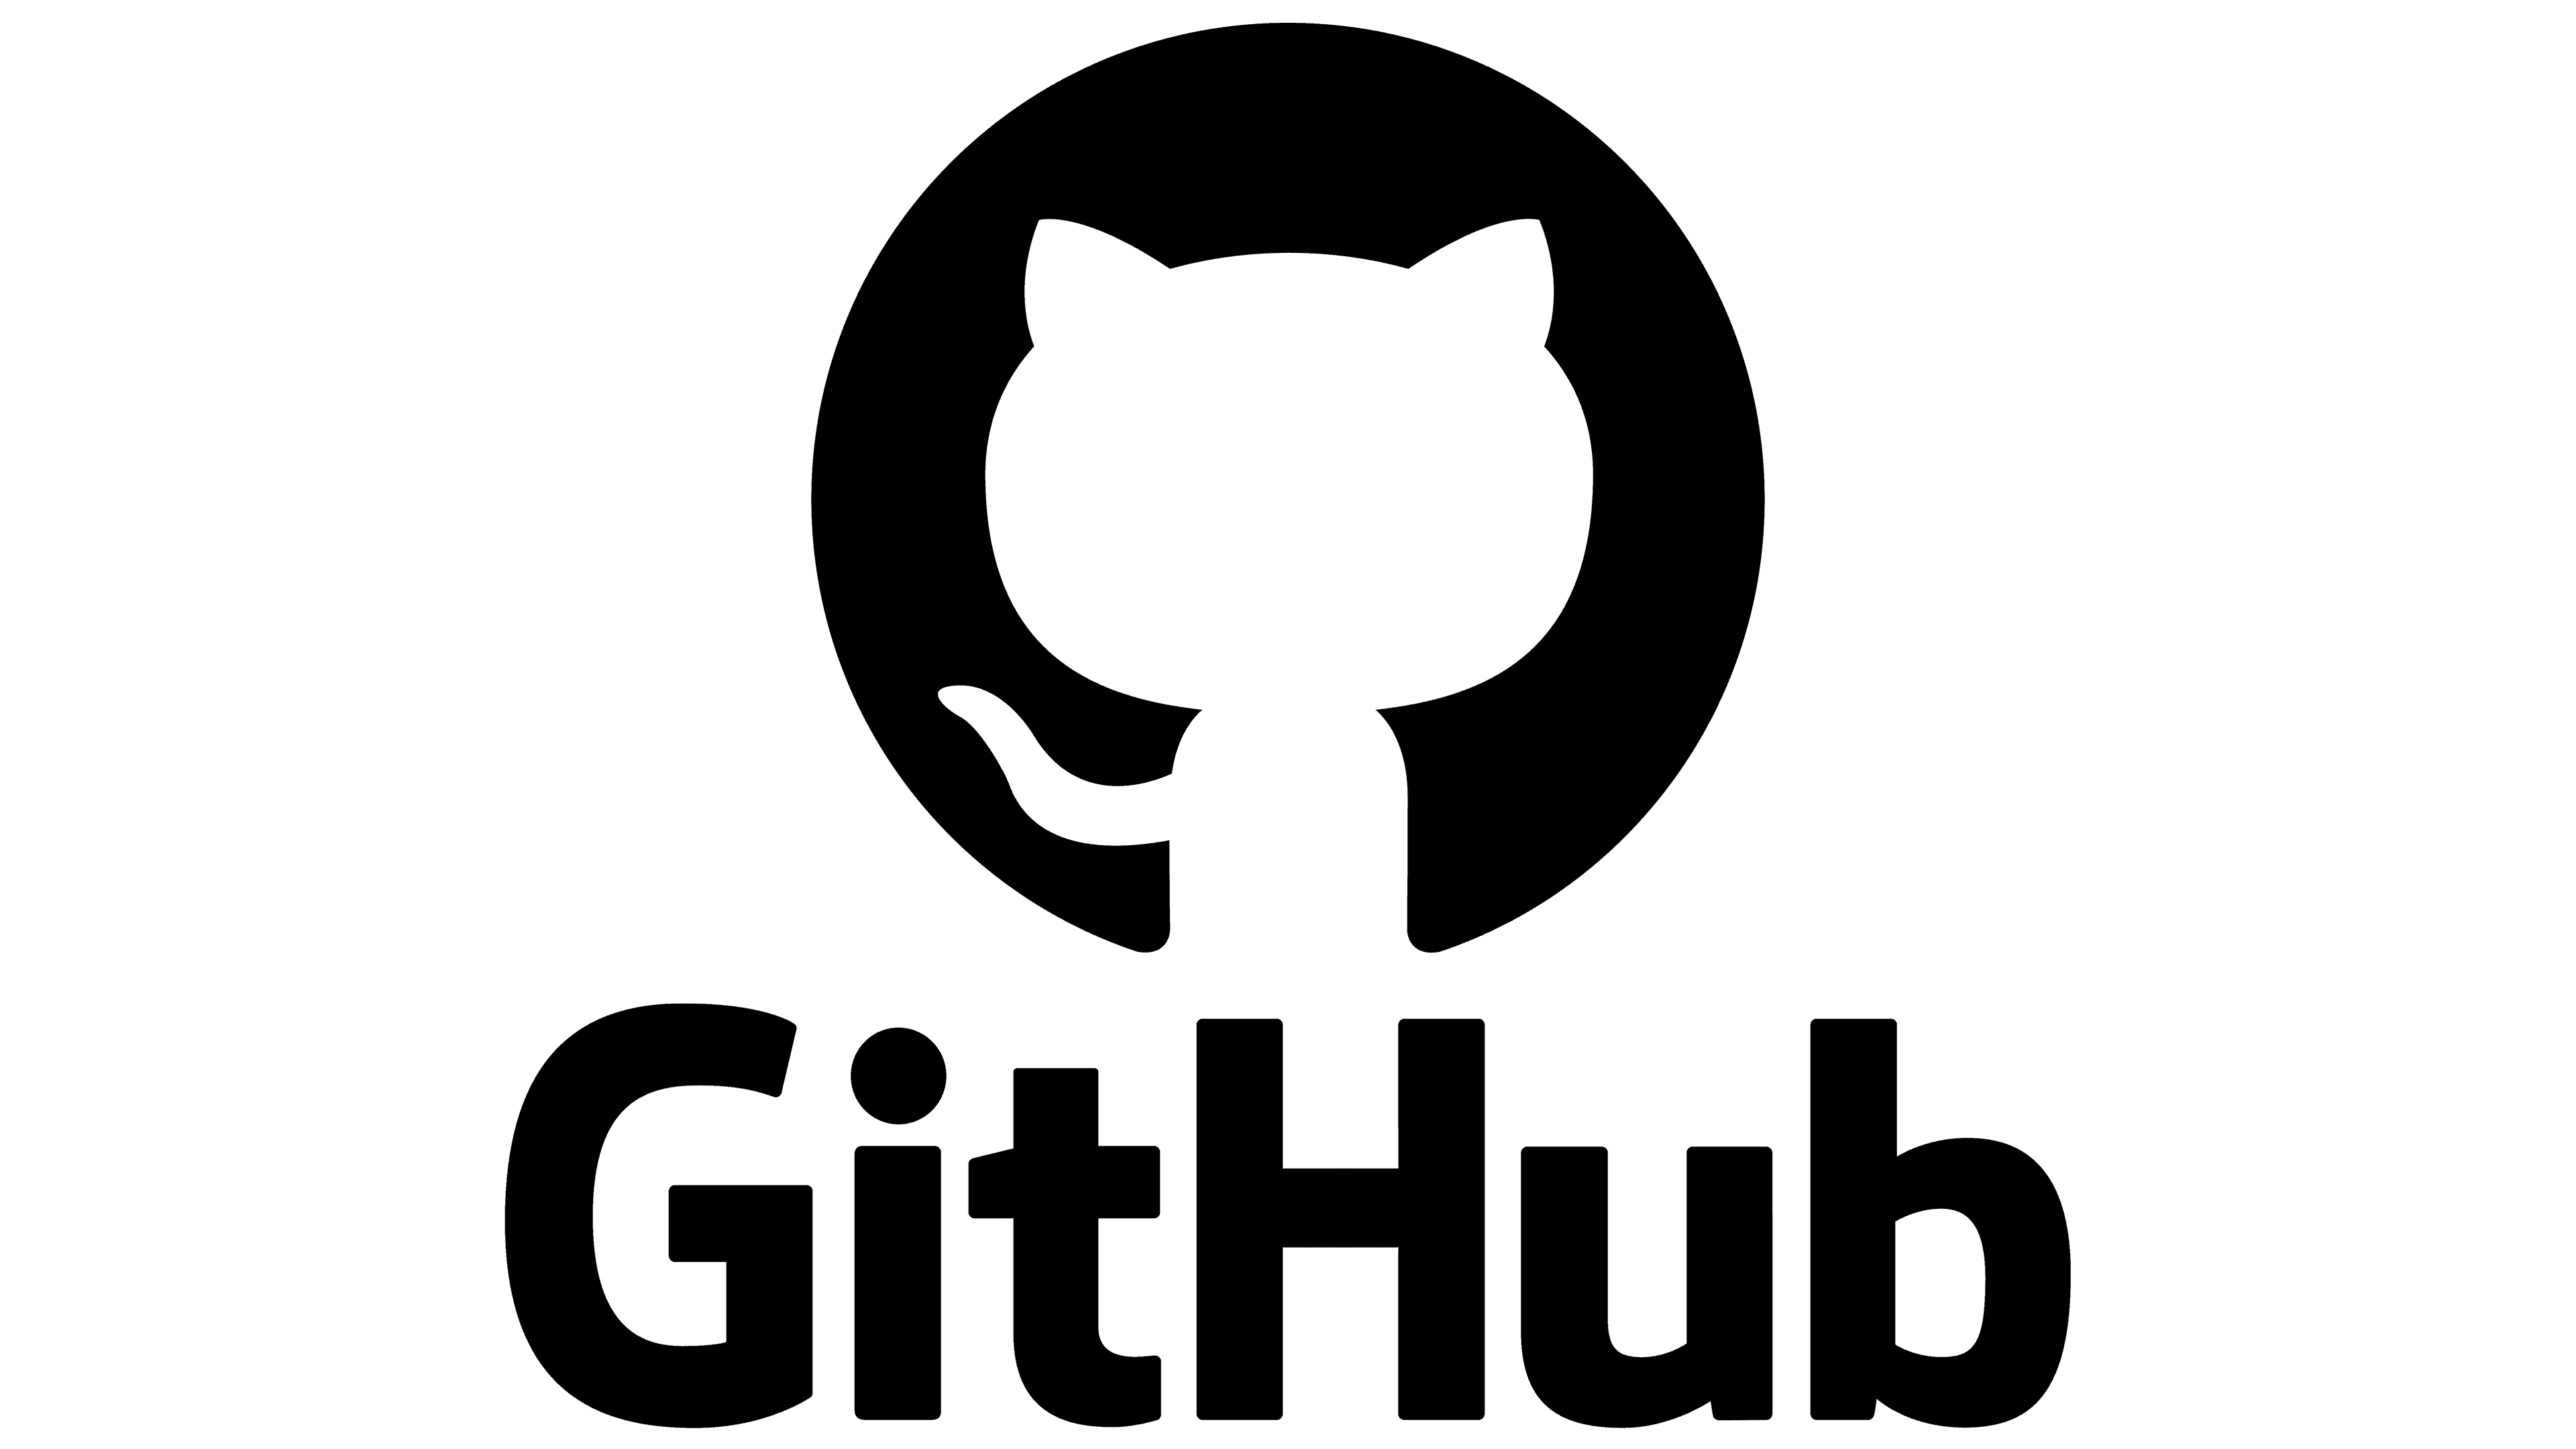 Creating Documents on GitHub